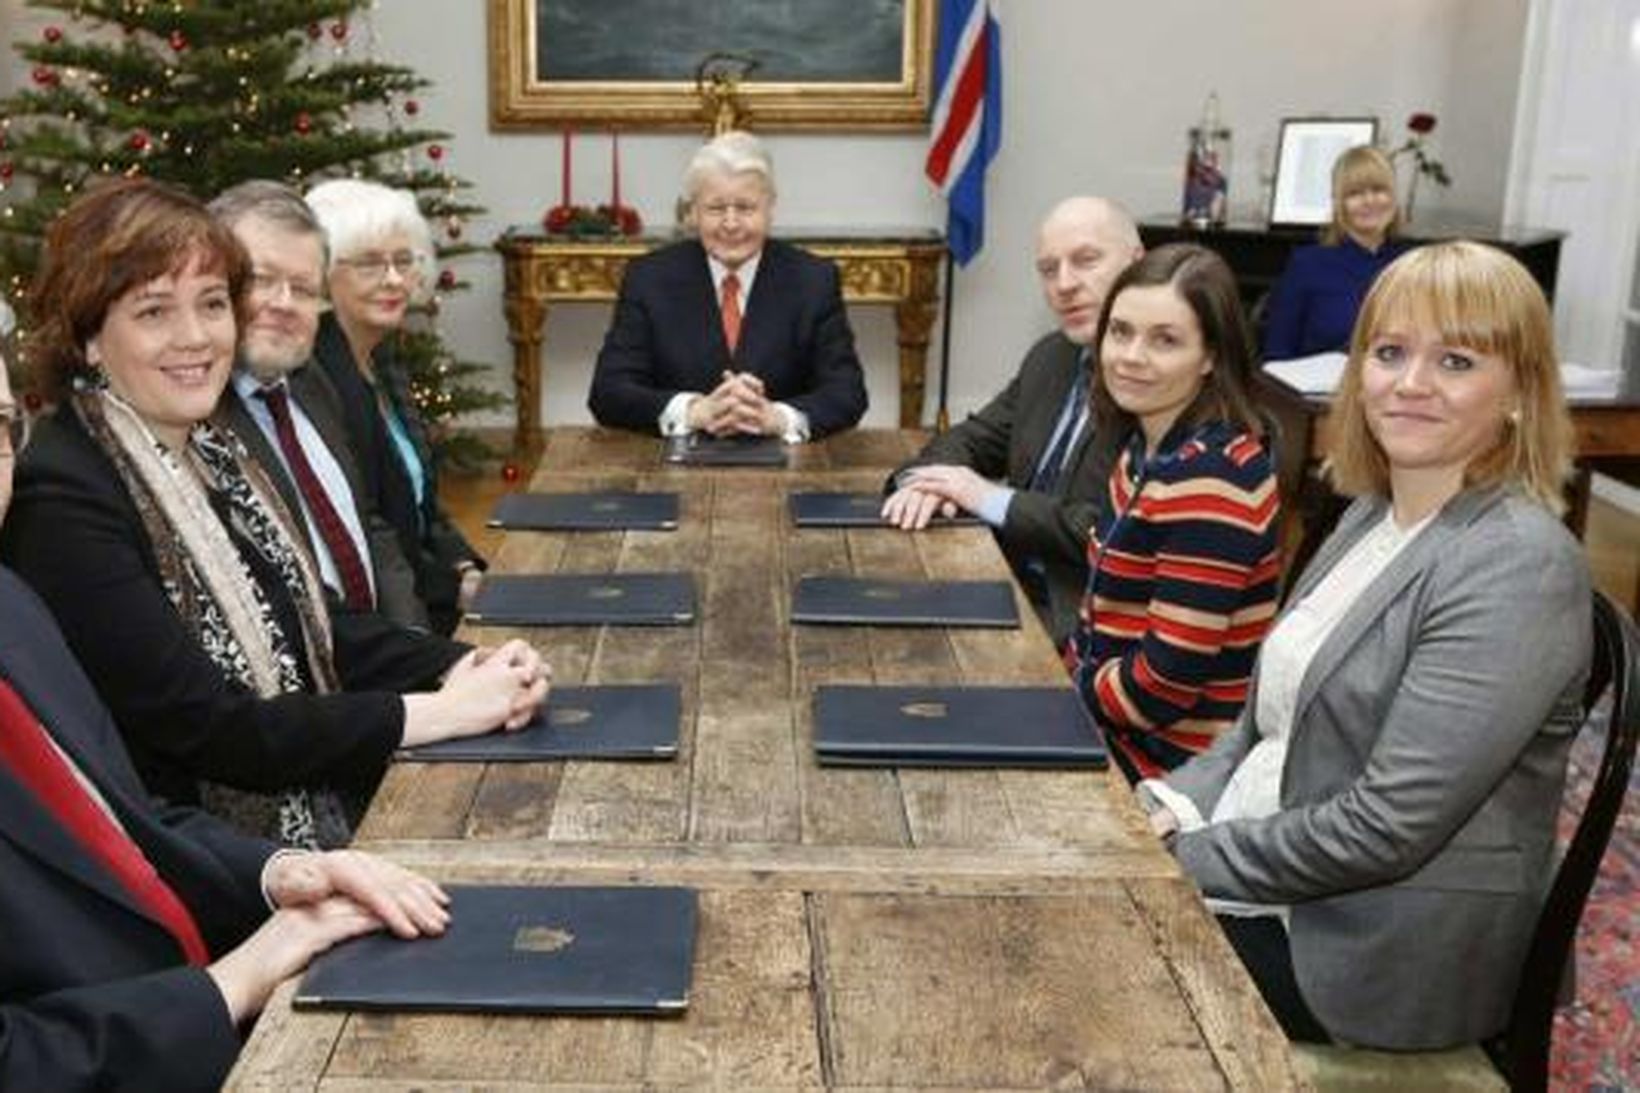 Ríkisstjórnin á fundi með forseta Íslands á gamlársdag 2012.